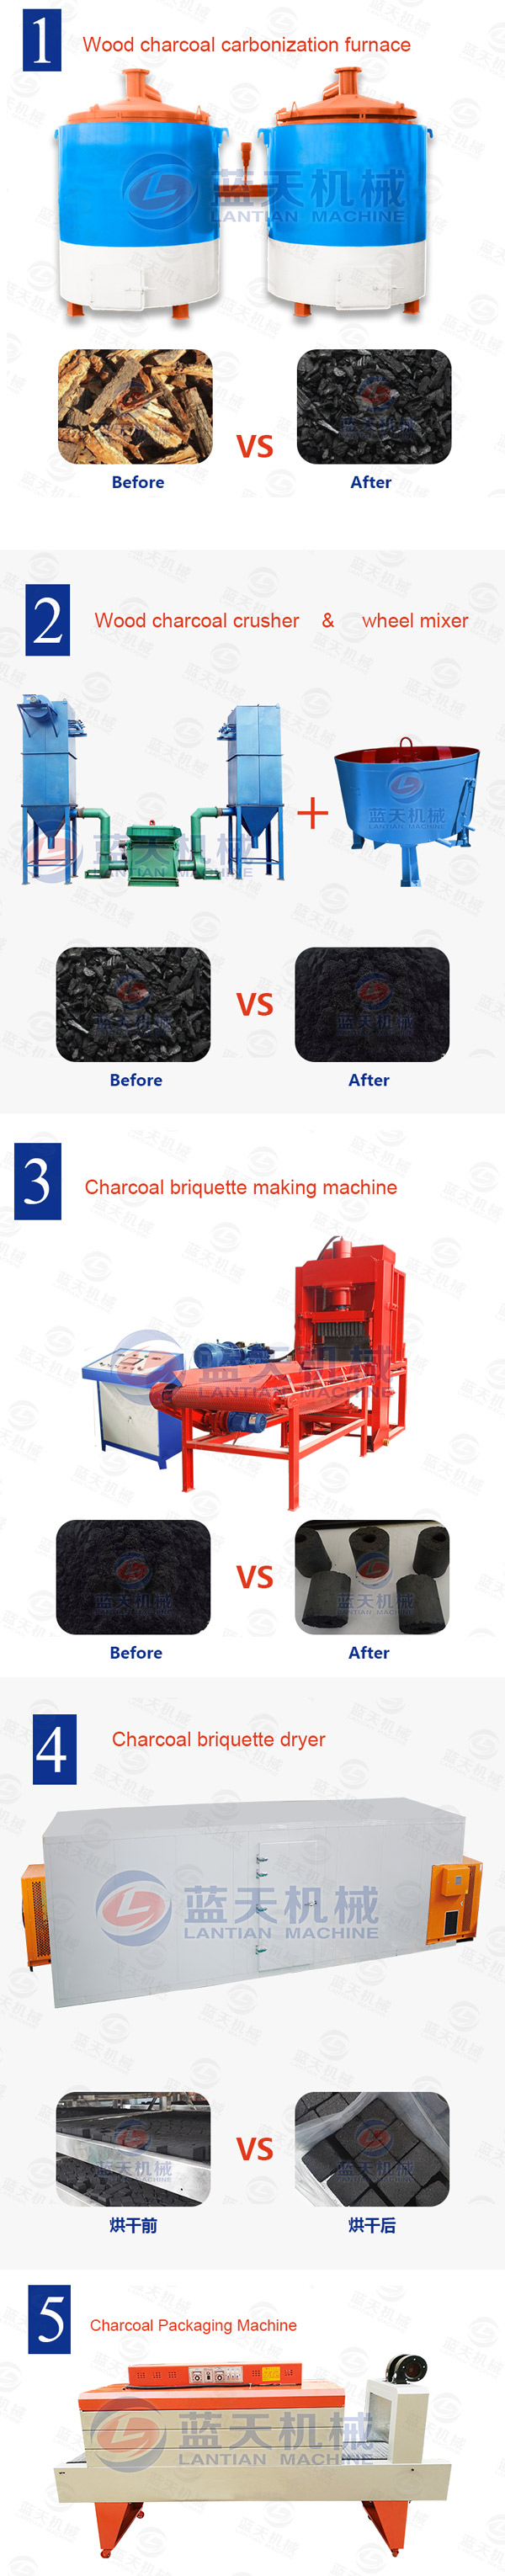 charcoal making equipment